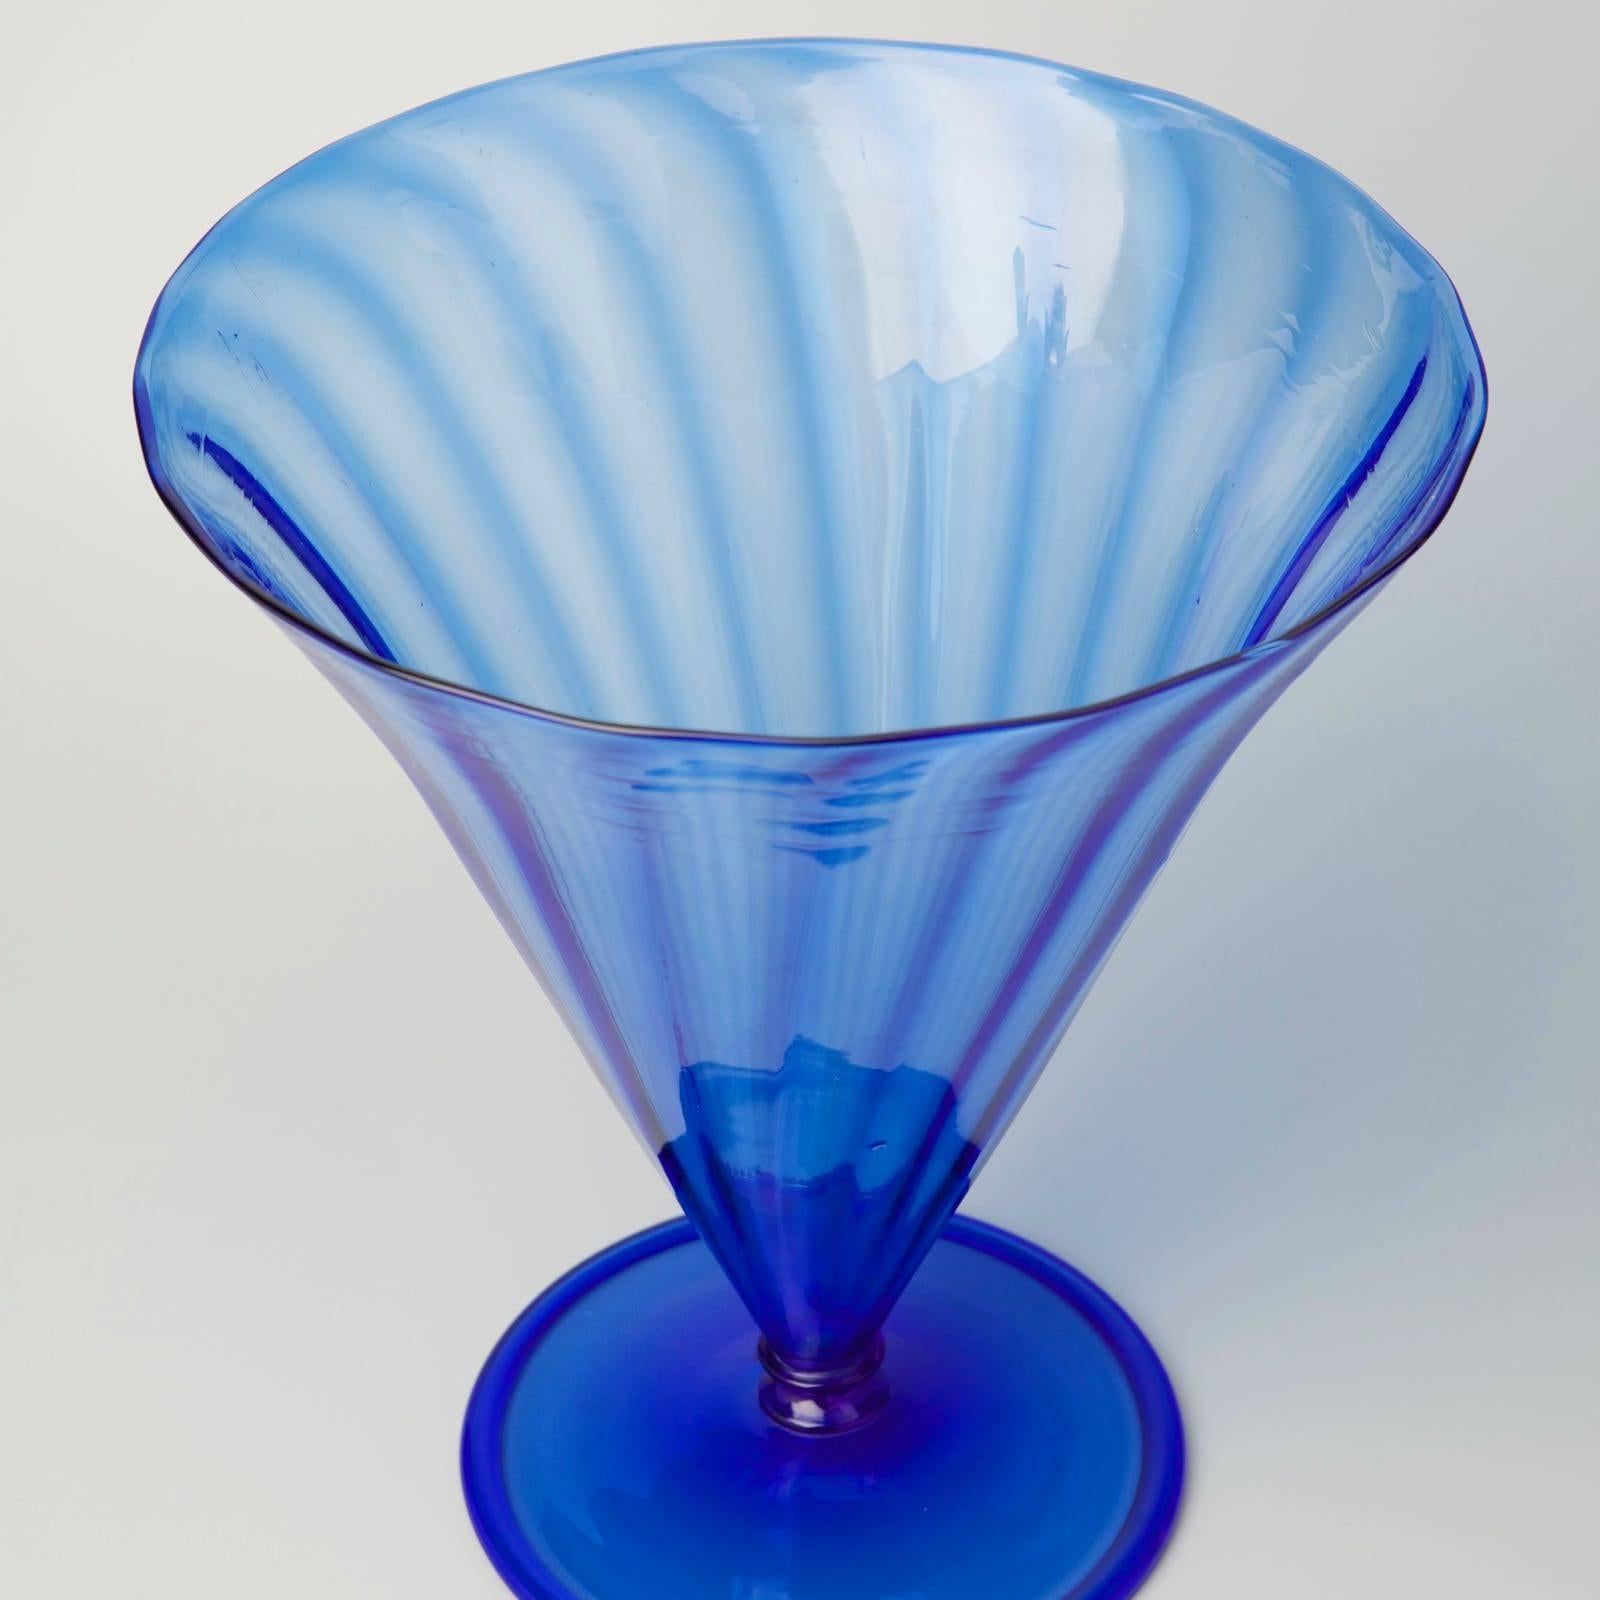 Large blue clear soffiati glass vase designed by Napoleone Martinuzzi for Vetri Soffiati Muranesi Venini Cappellin & Co (Murano) in 1927, model n° 3145 illustrated in 